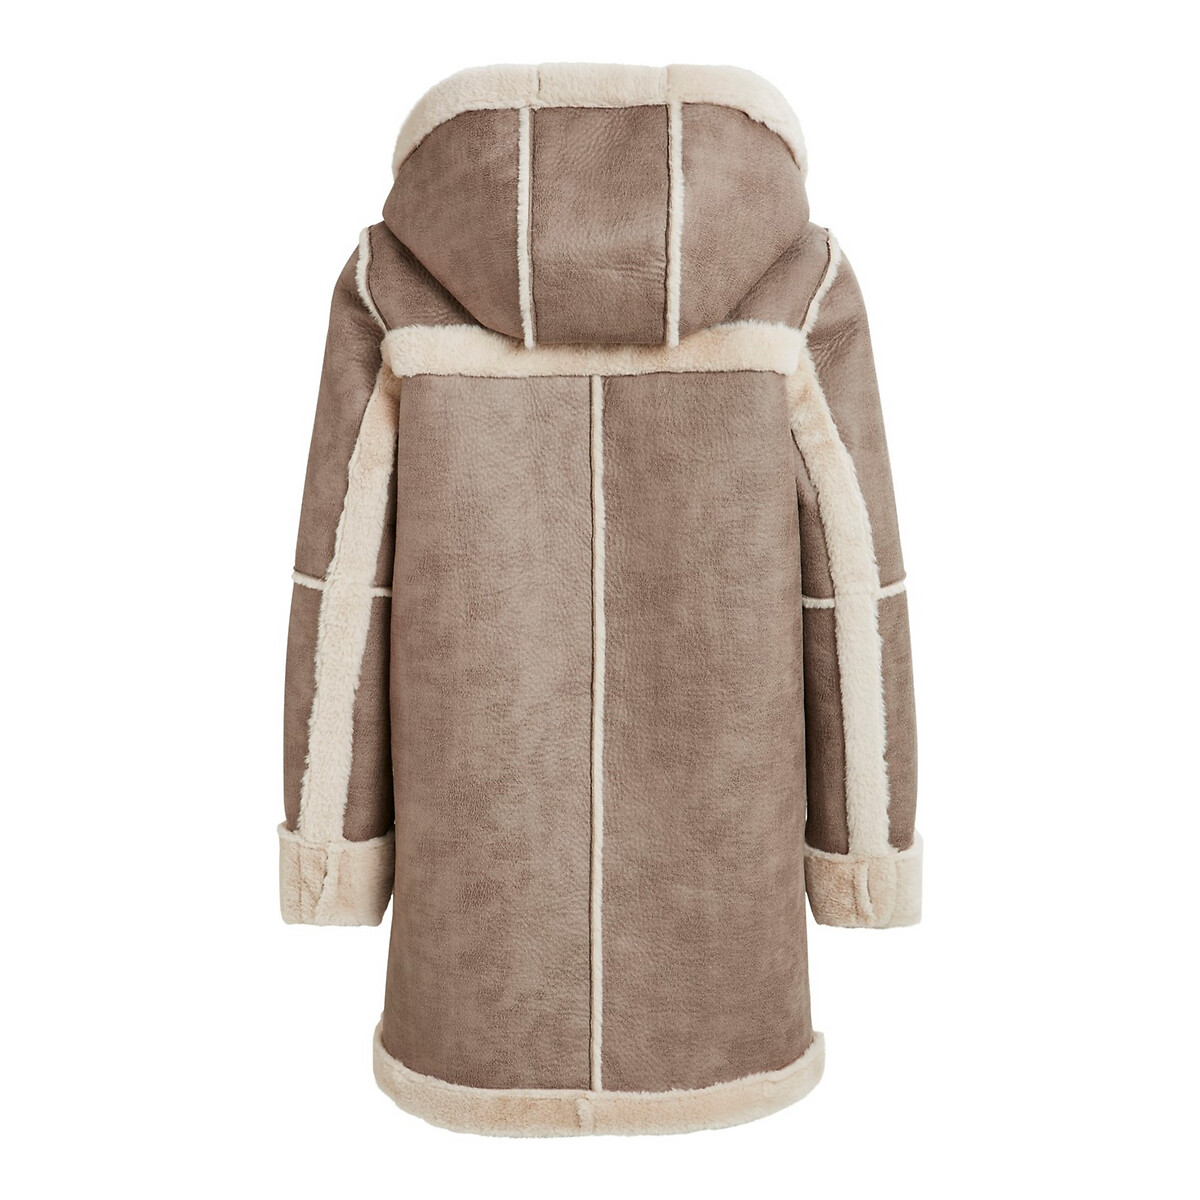 Пальто La Redoute С капюшоном под кожу мутон 38 (FR) - 44 (RUS) каштановый, размер 38 (FR) - 44 (RUS) С капюшоном под кожу мутон 38 (FR) - 44 (RUS) каштановый - фото 2